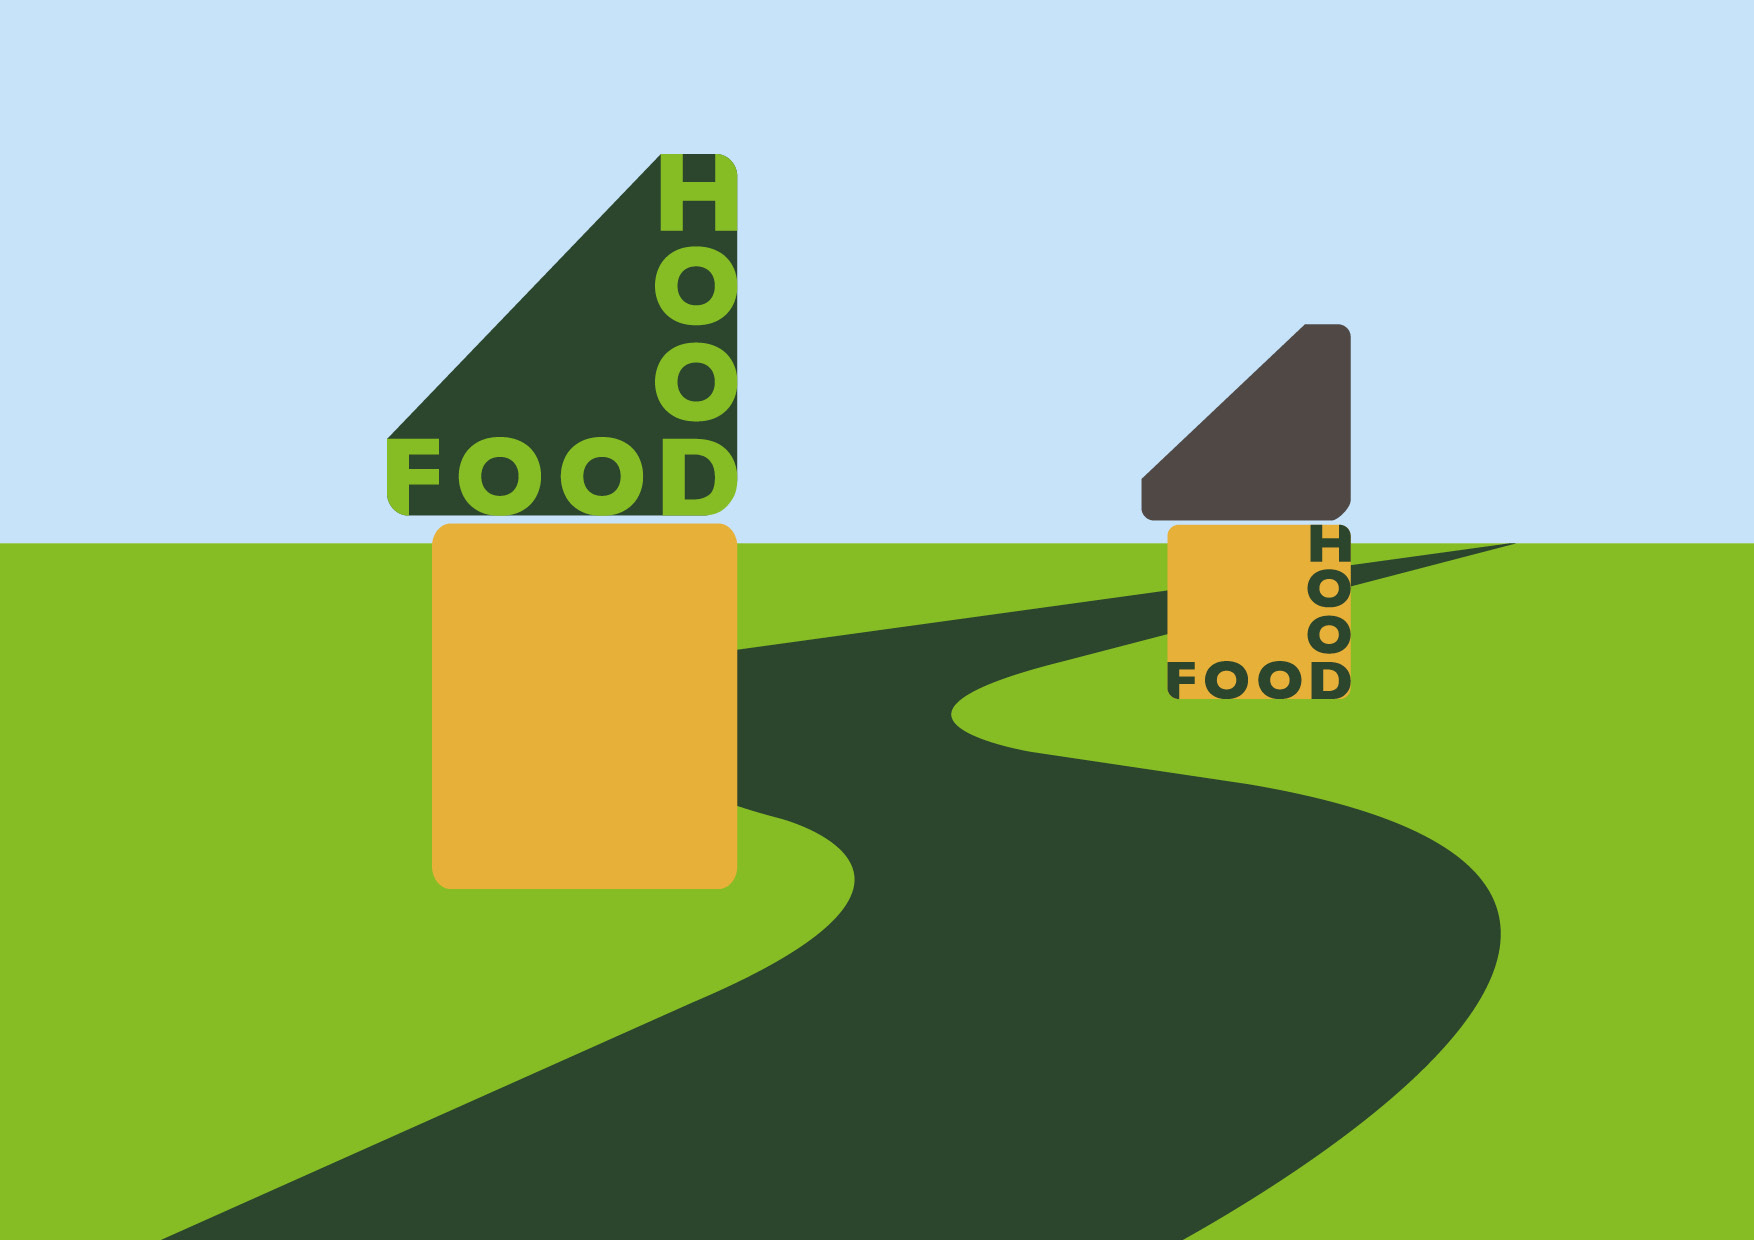 FOOD HOOD visuel identitet pdf